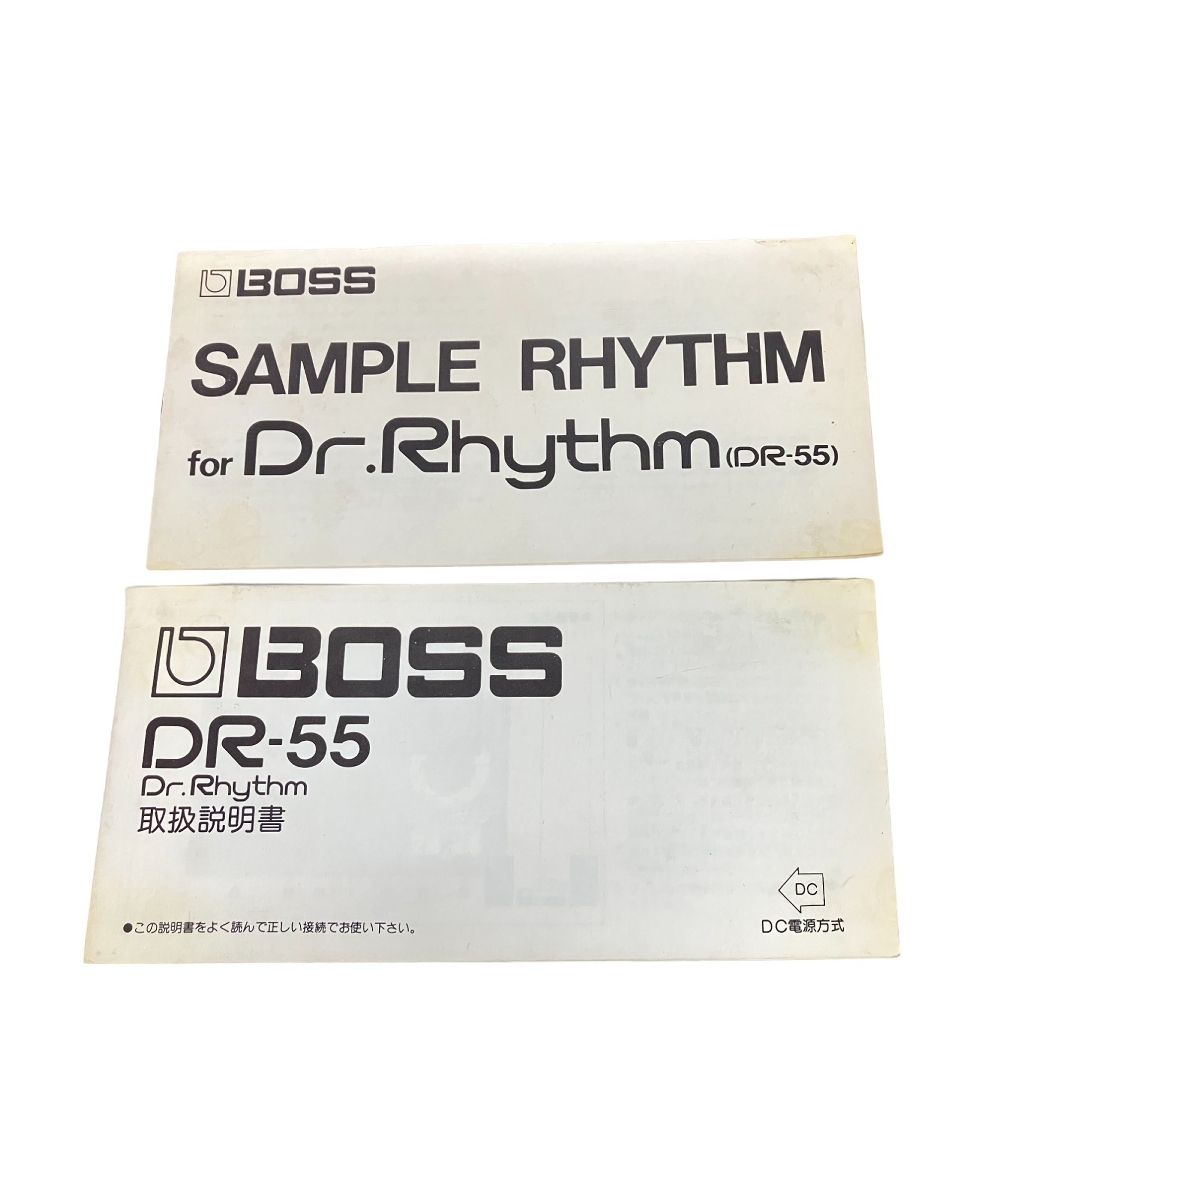 [ гарантия работы ]BOSS DR-55 Dr.Rhythmdokta- ритм ритм-бокс б/у K8794256